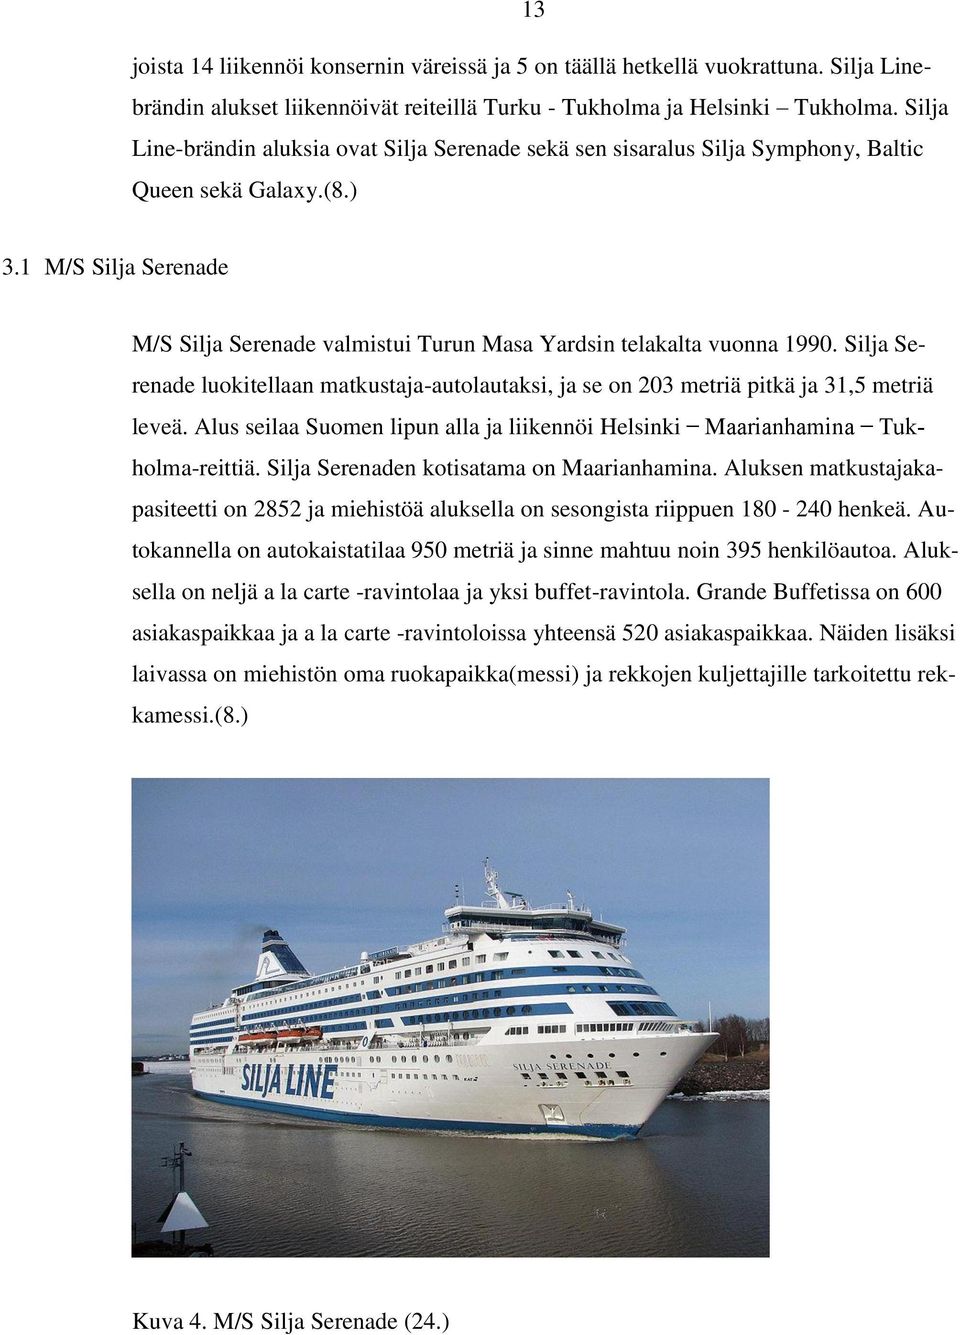 1 M/S Silja Serenade M/S Silja Serenade valmistui Turun Masa Yardsin telakalta vuonna 1990. Silja Serenade luokitellaan matkustaja-autolautaksi, ja se on 203 metriä pitkä ja 31,5 metriä leveä.